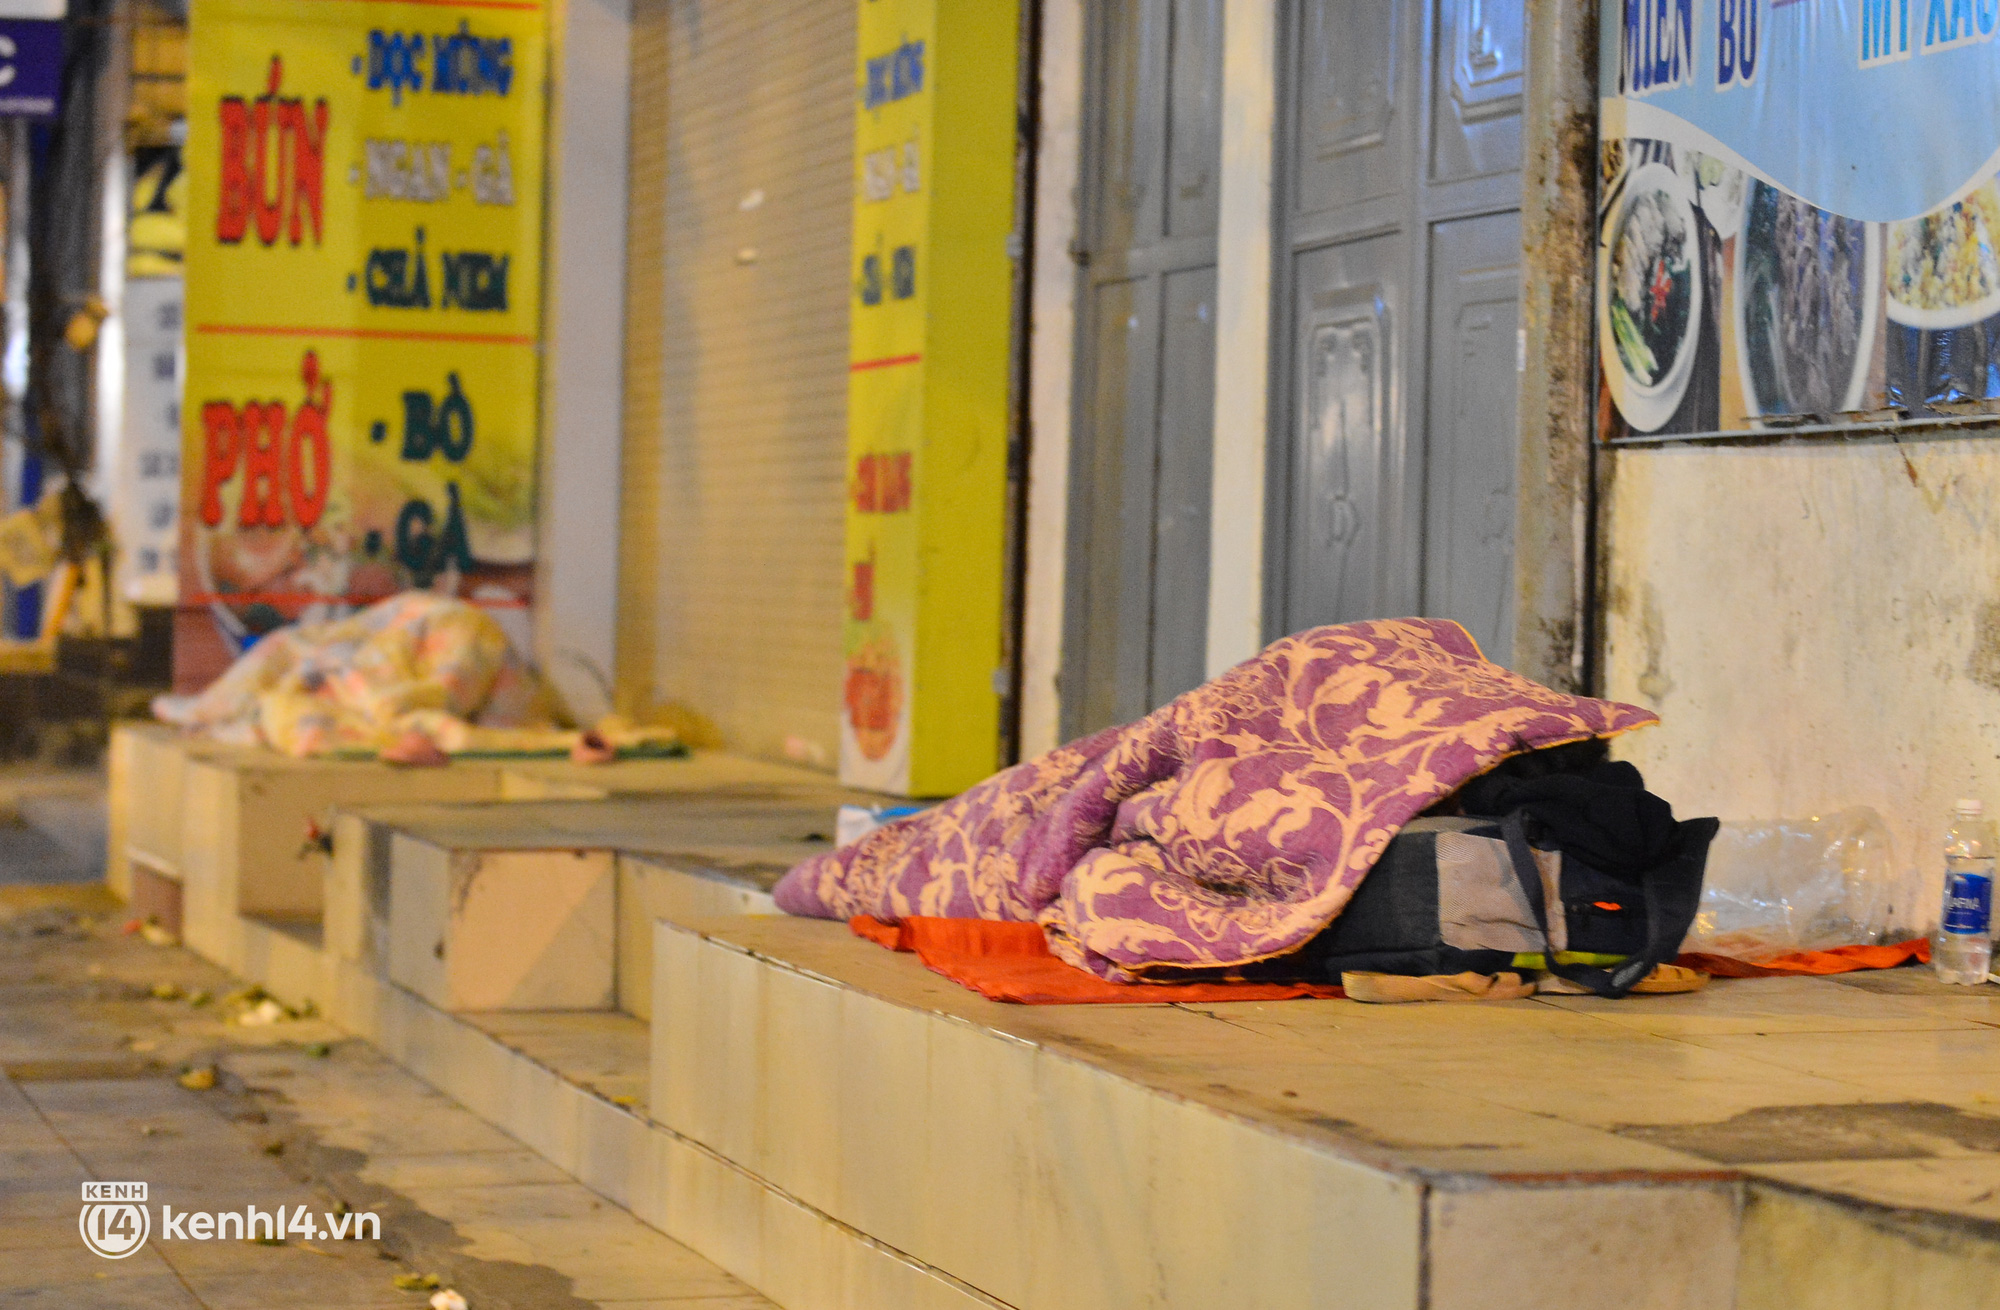 Xót xa cảnh con gái 6 tuổi theo mẹ ngủ vỉa hè dưới cái lạnh 12 độ ở Hà Nội: Lo cho con nhưng chẳng biết làm thế nào - Ảnh 2.